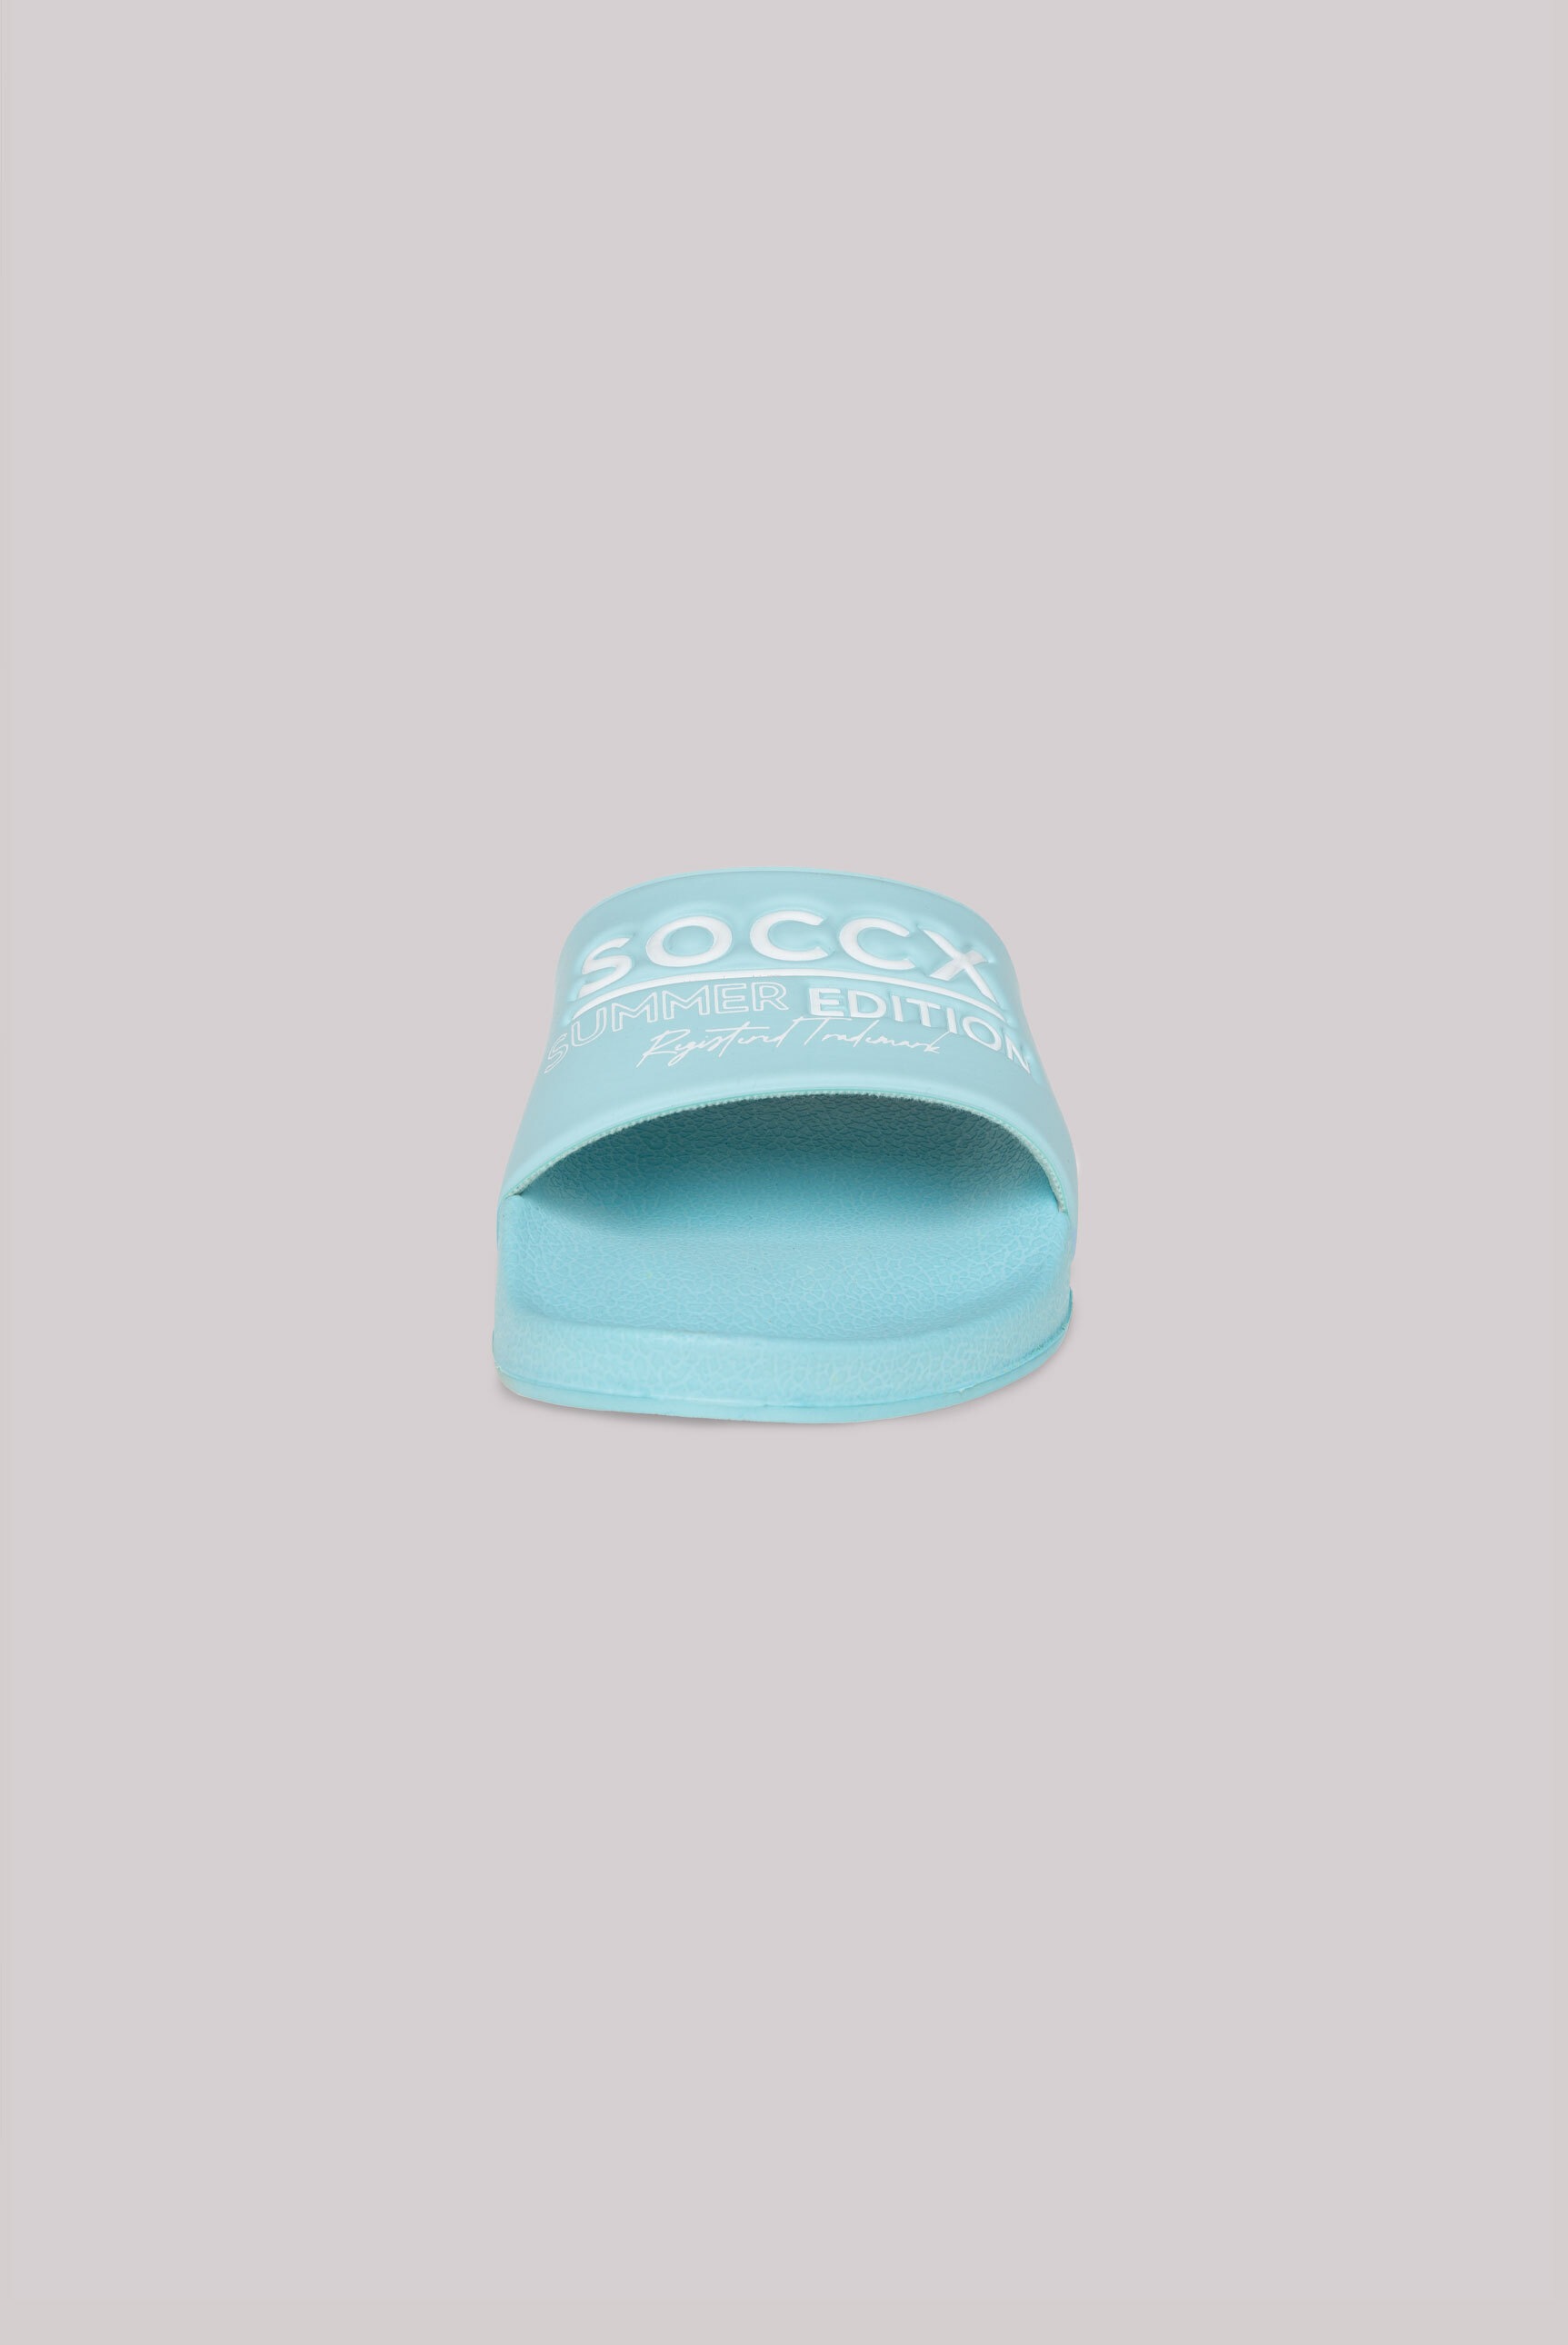 SOCCX Pantolette, für Nassräume geeignet